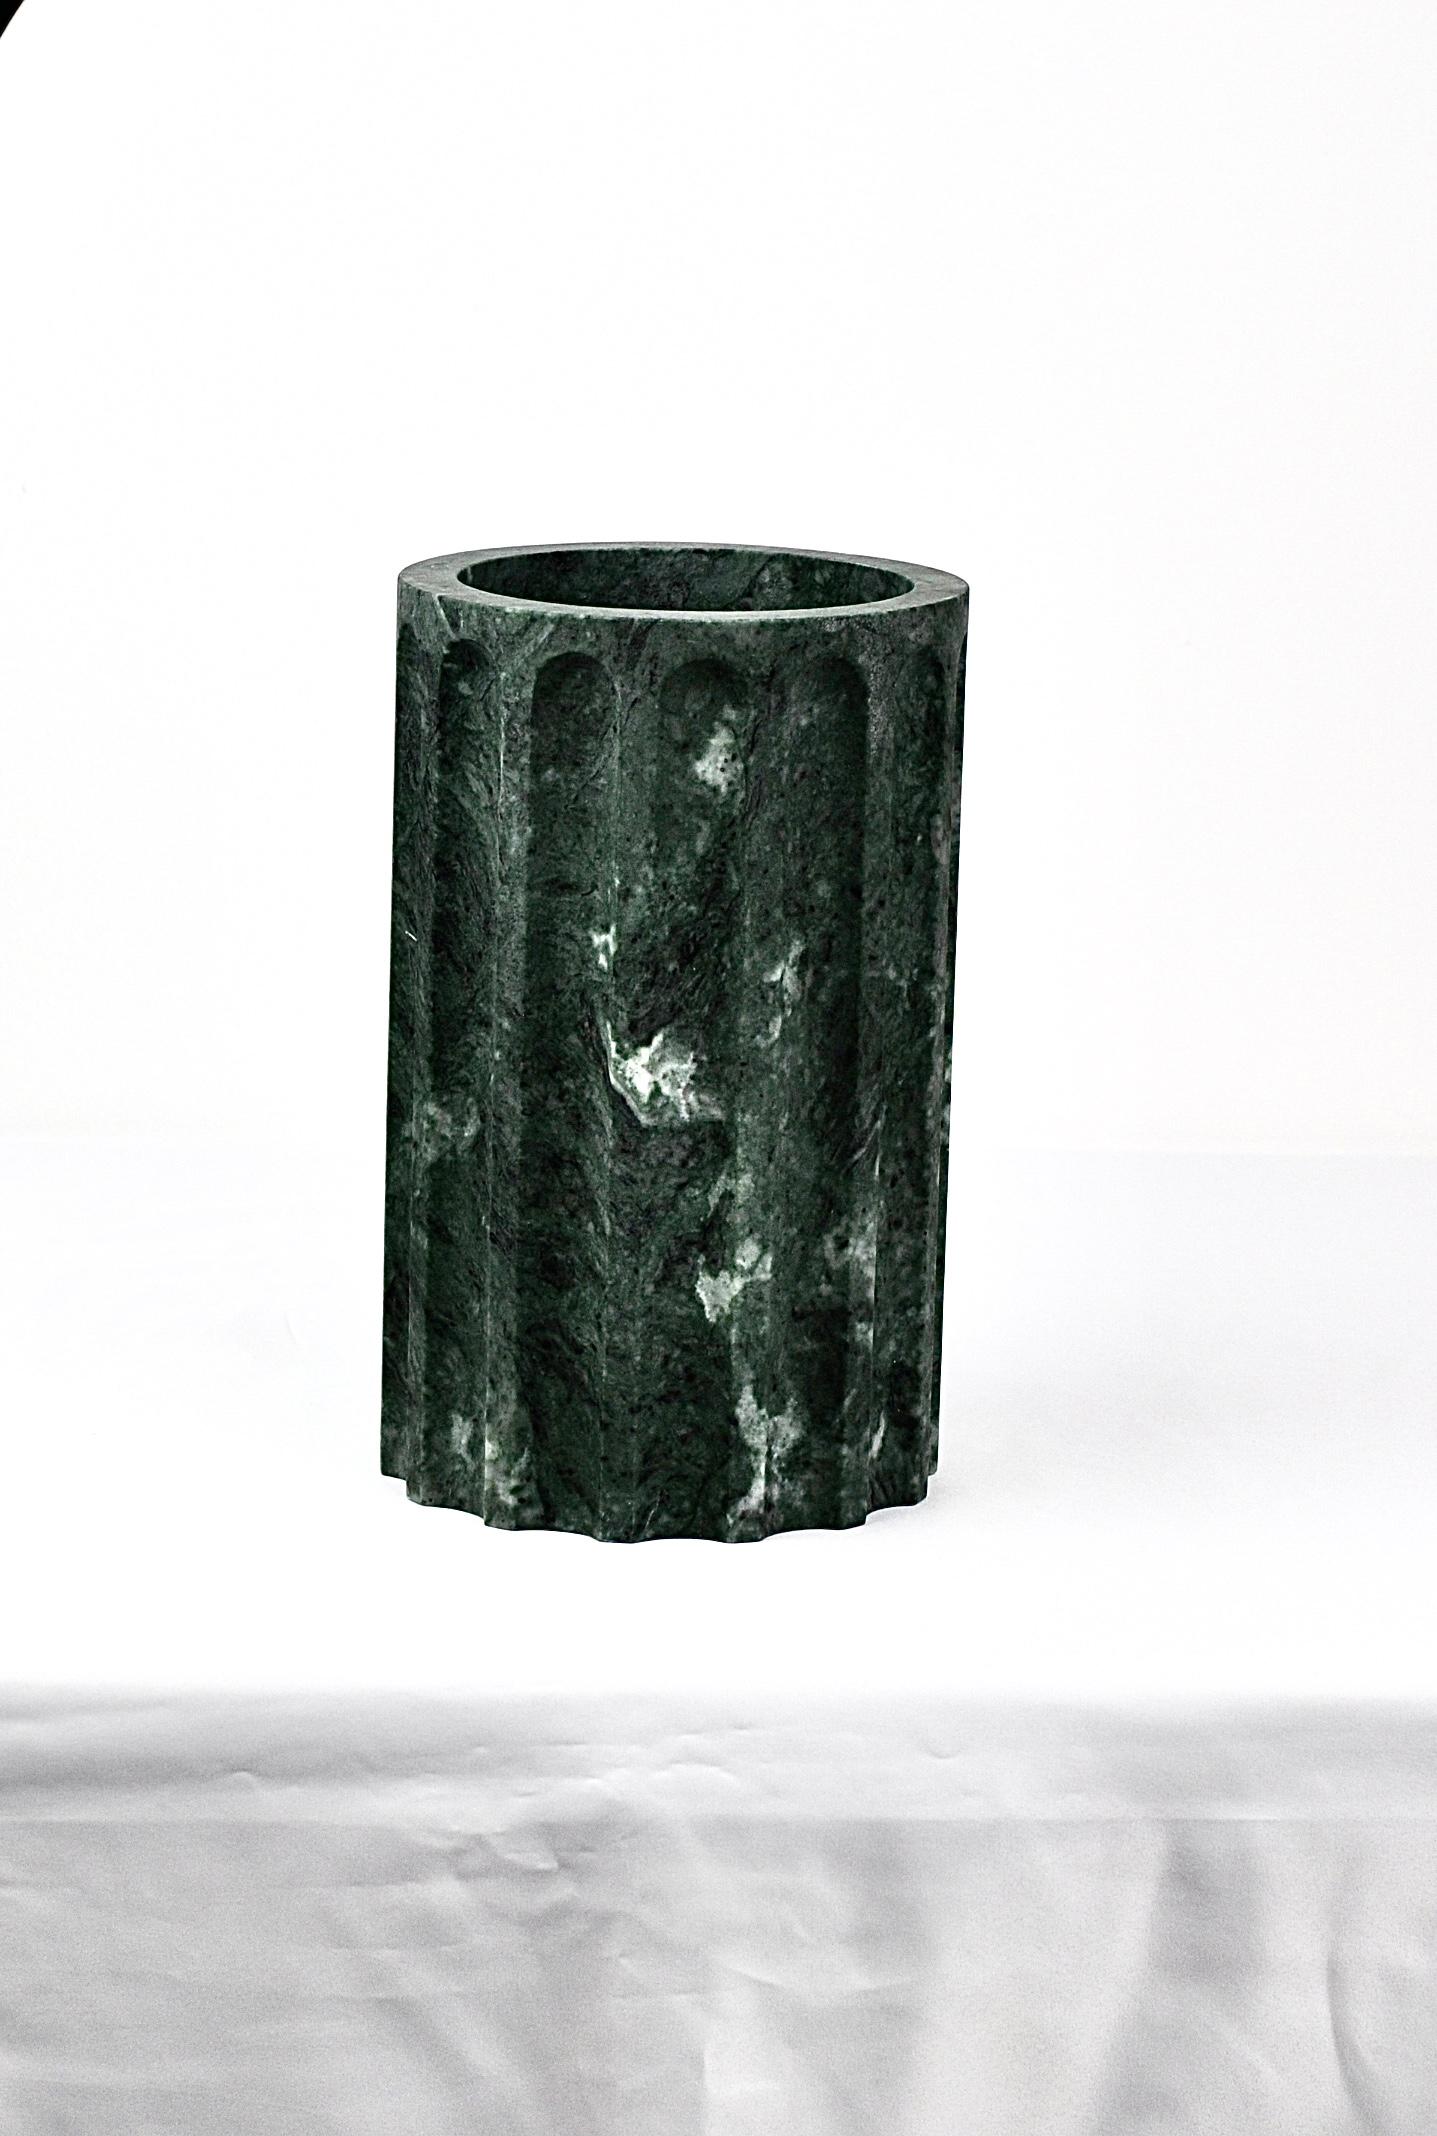 Sockel der 3-teiligen Säulenvase aus Paonazzo, schwarzem, grünem oder Travertin-Marmor. Die Stücke können einzeln verkauft werden und sind vielseitig einsetzbar. Collection'S in Collaboration mit SuonareStella.
Dieses Objekt verleiht Ihrem Haus eine